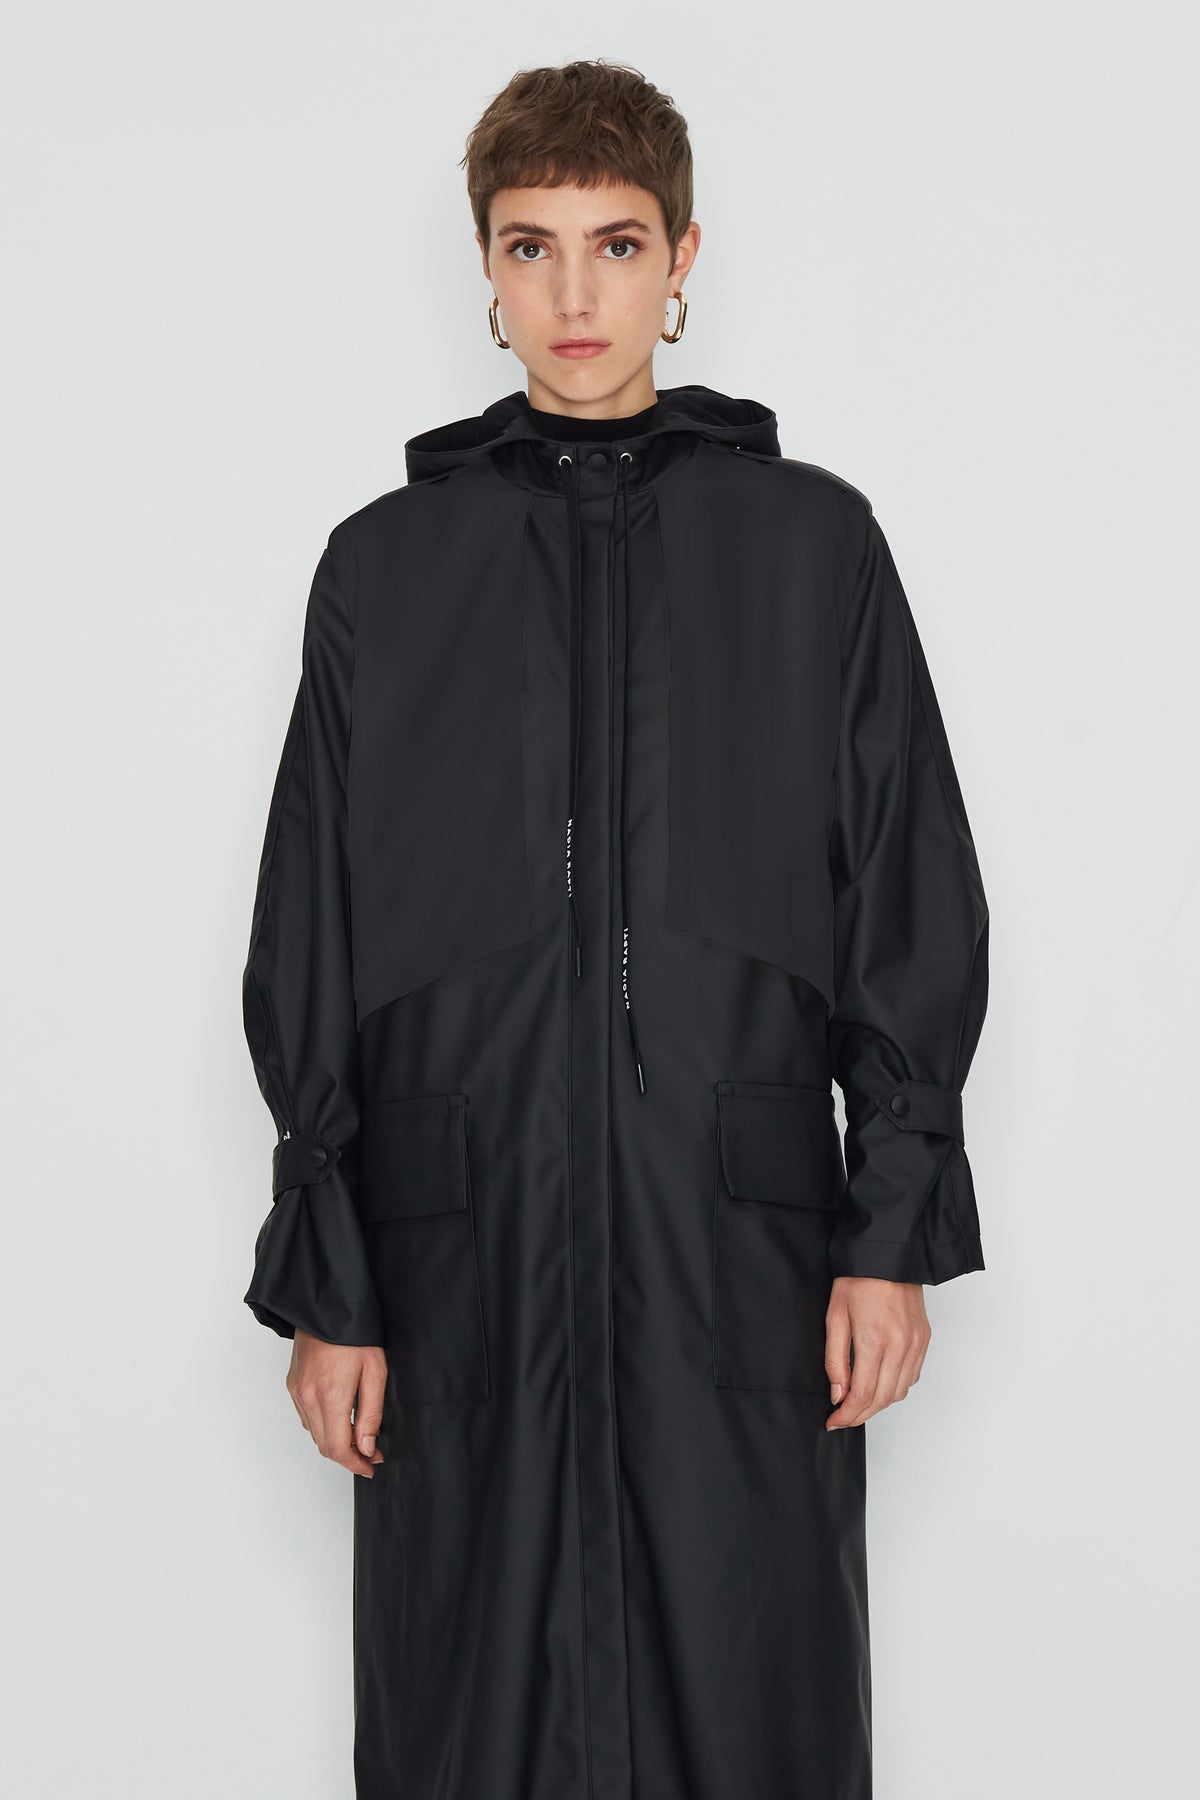 Rainessence Raincoat / Black